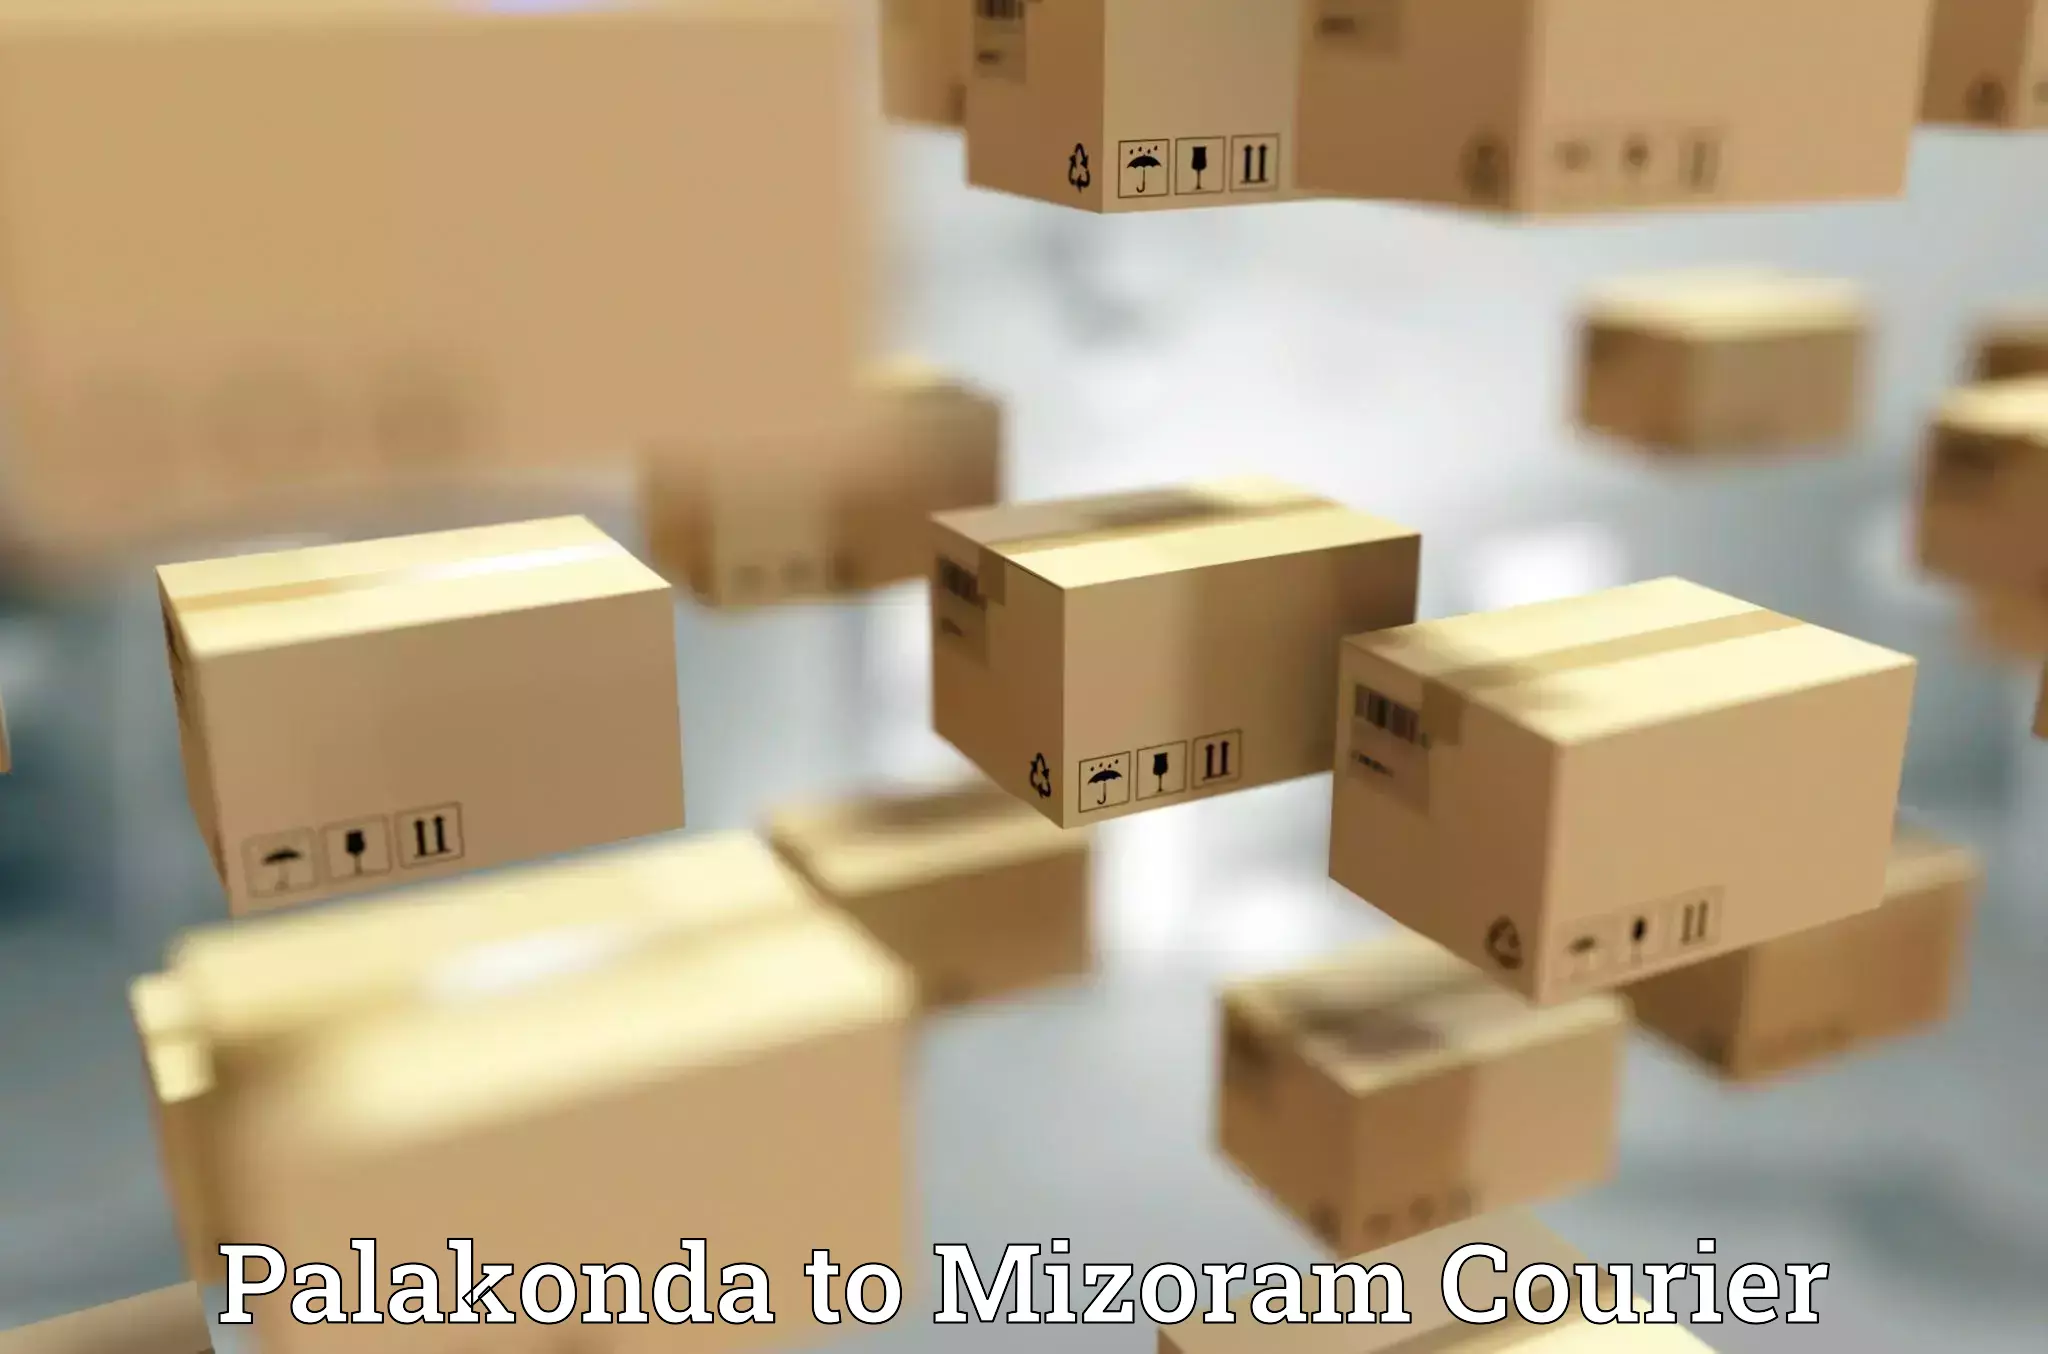 Express package handling Palakonda to Mizoram